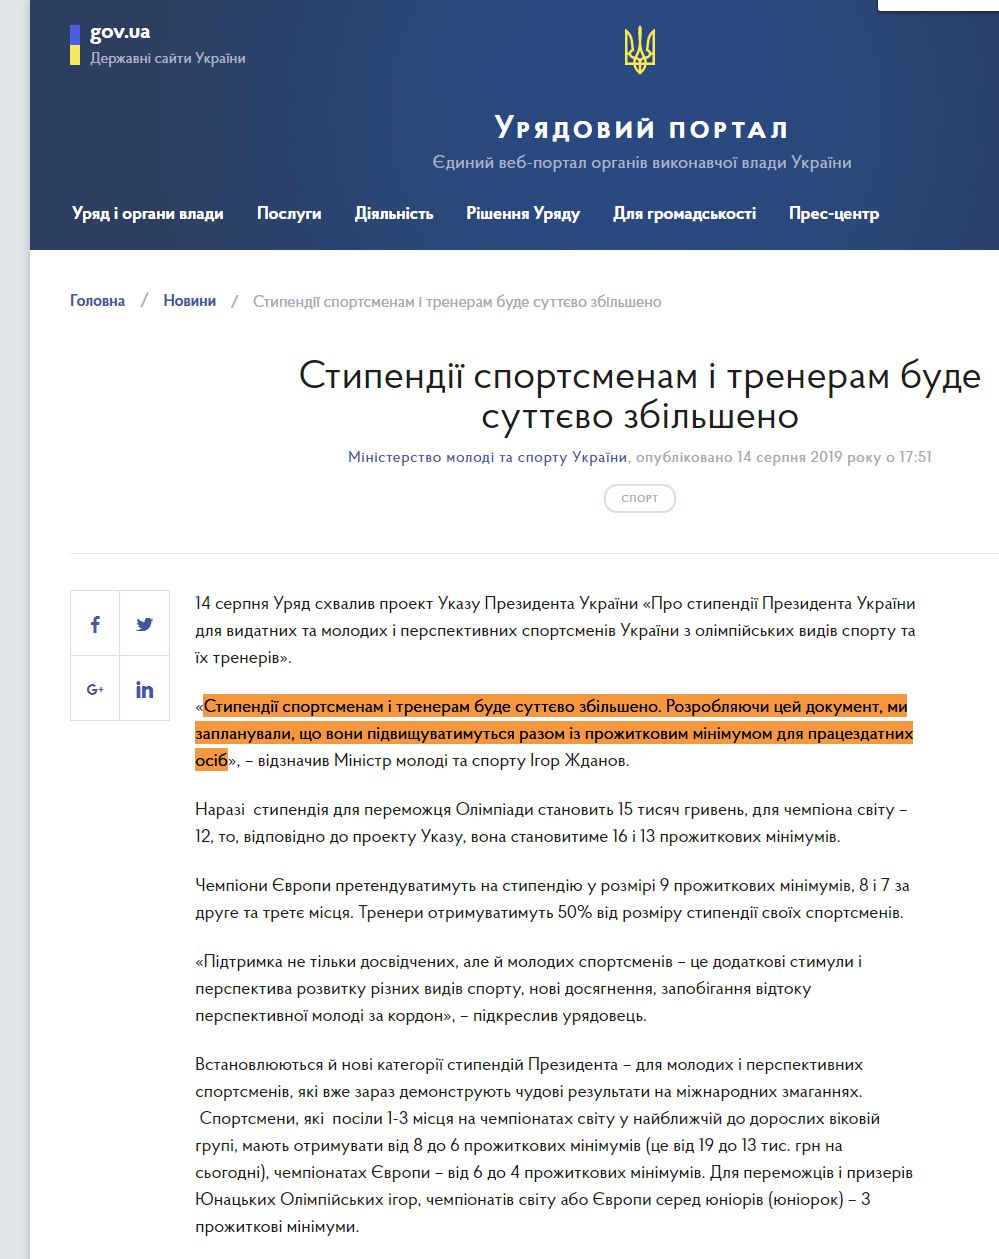 https://www.kmu.gov.ua/news/stipendiyi-sportsmenam-i-treneram-bude-suttyevo-zbilsheno